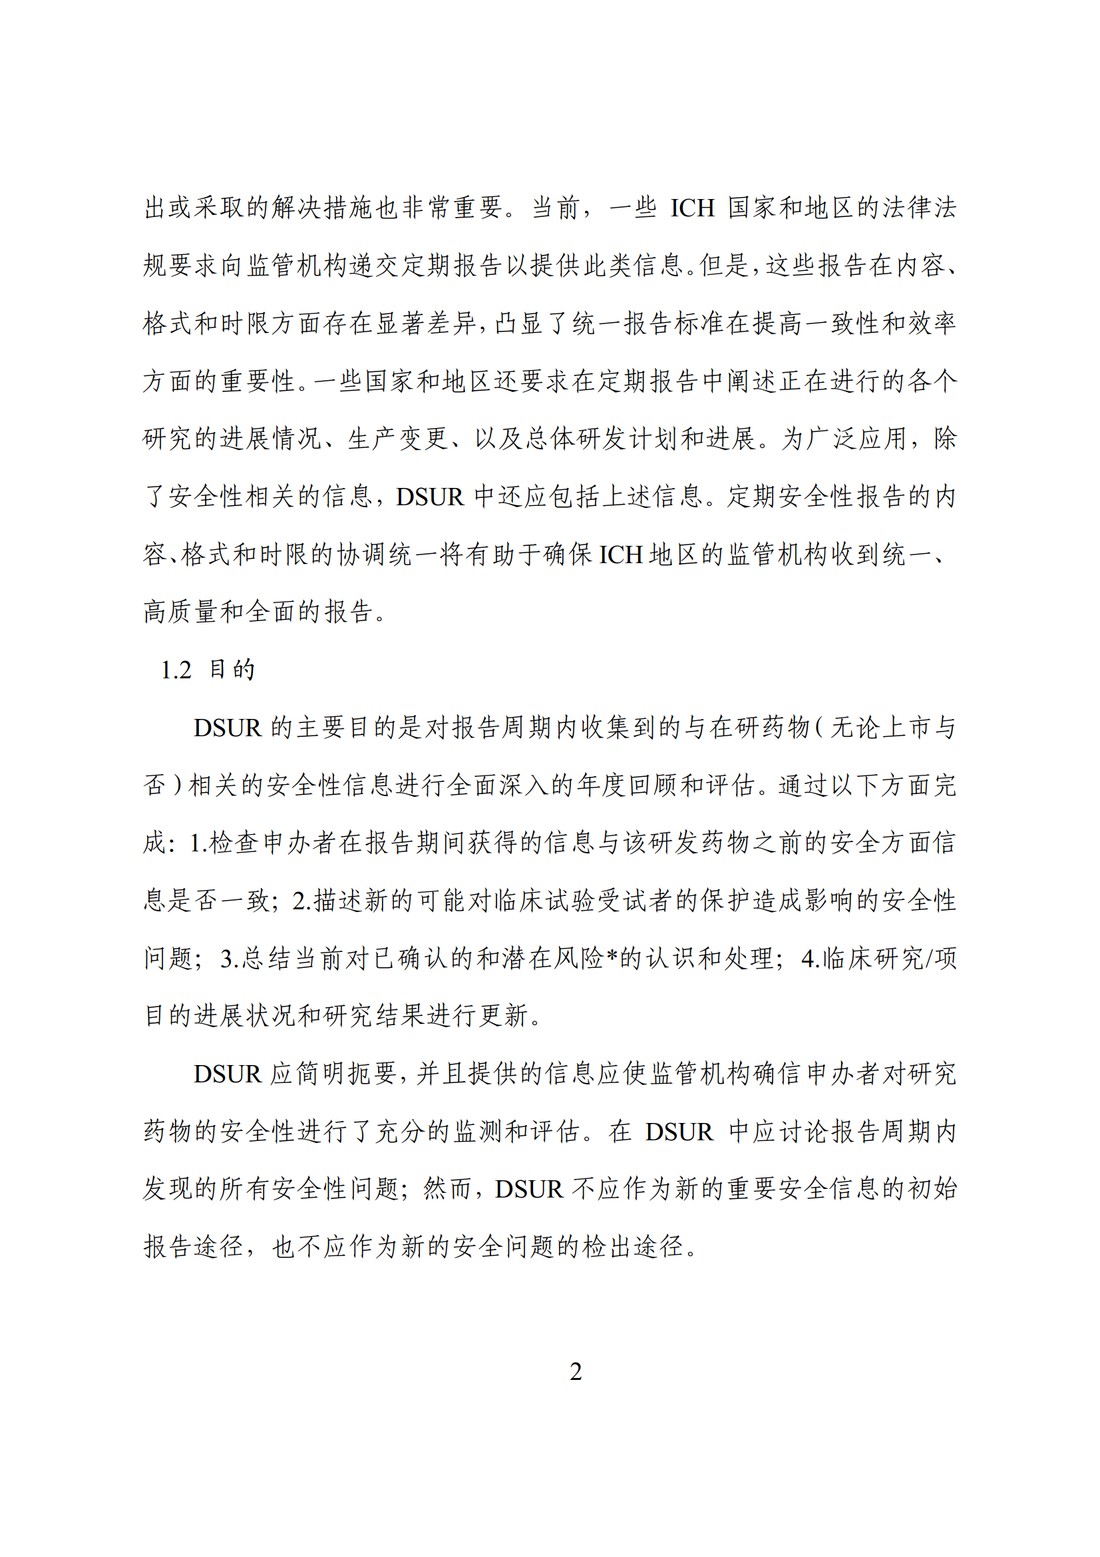 E2F 研发期间安全性更新报告(中文翻译公开征求意见稿)_07.jpg